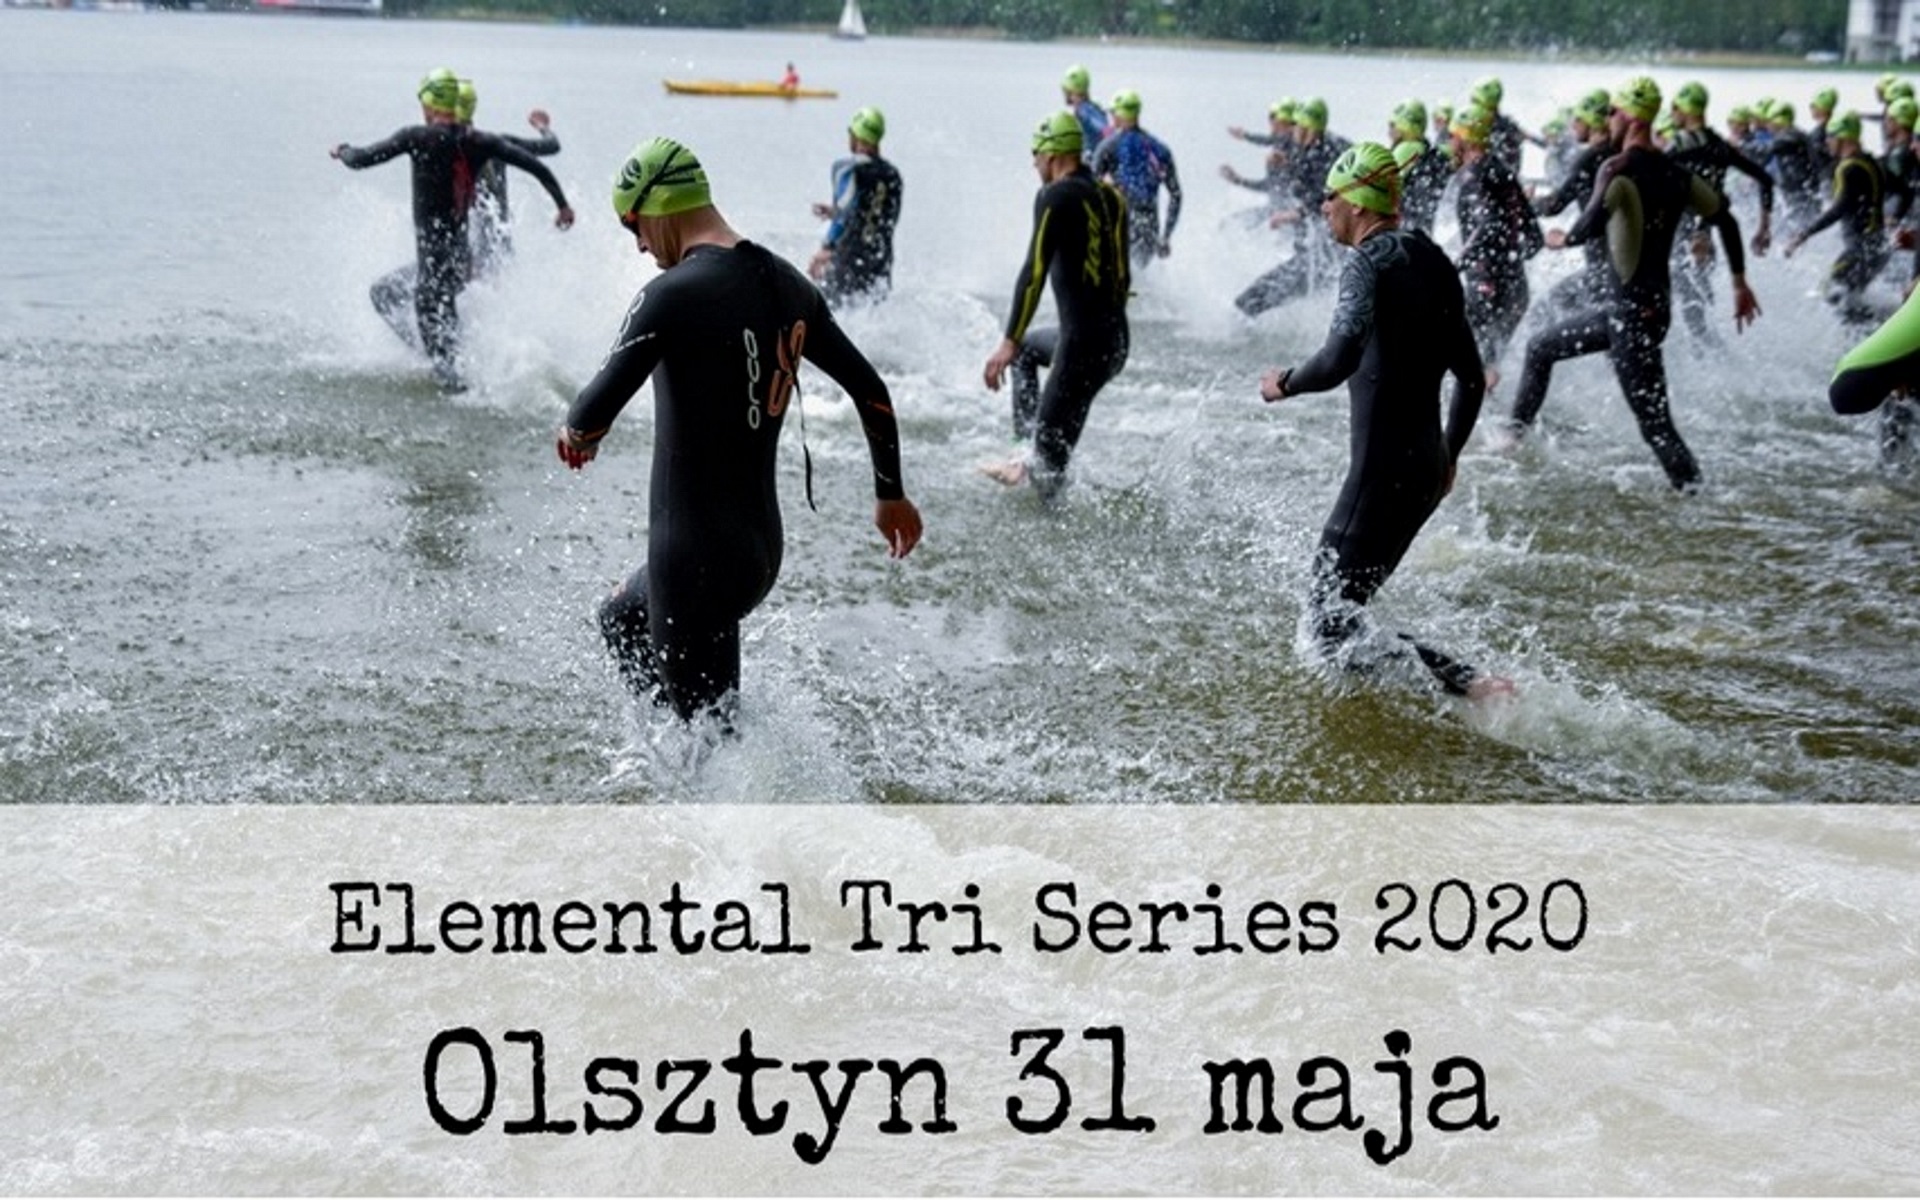 Plakat zdjęcie zapraszające na zawody Triathlon Elemental Tri Series Olsztyn 2020. Na zdjęciu zawodnicy wchodzący do jeziora i startujący do zawodów w dyscyplinie pływanie.   